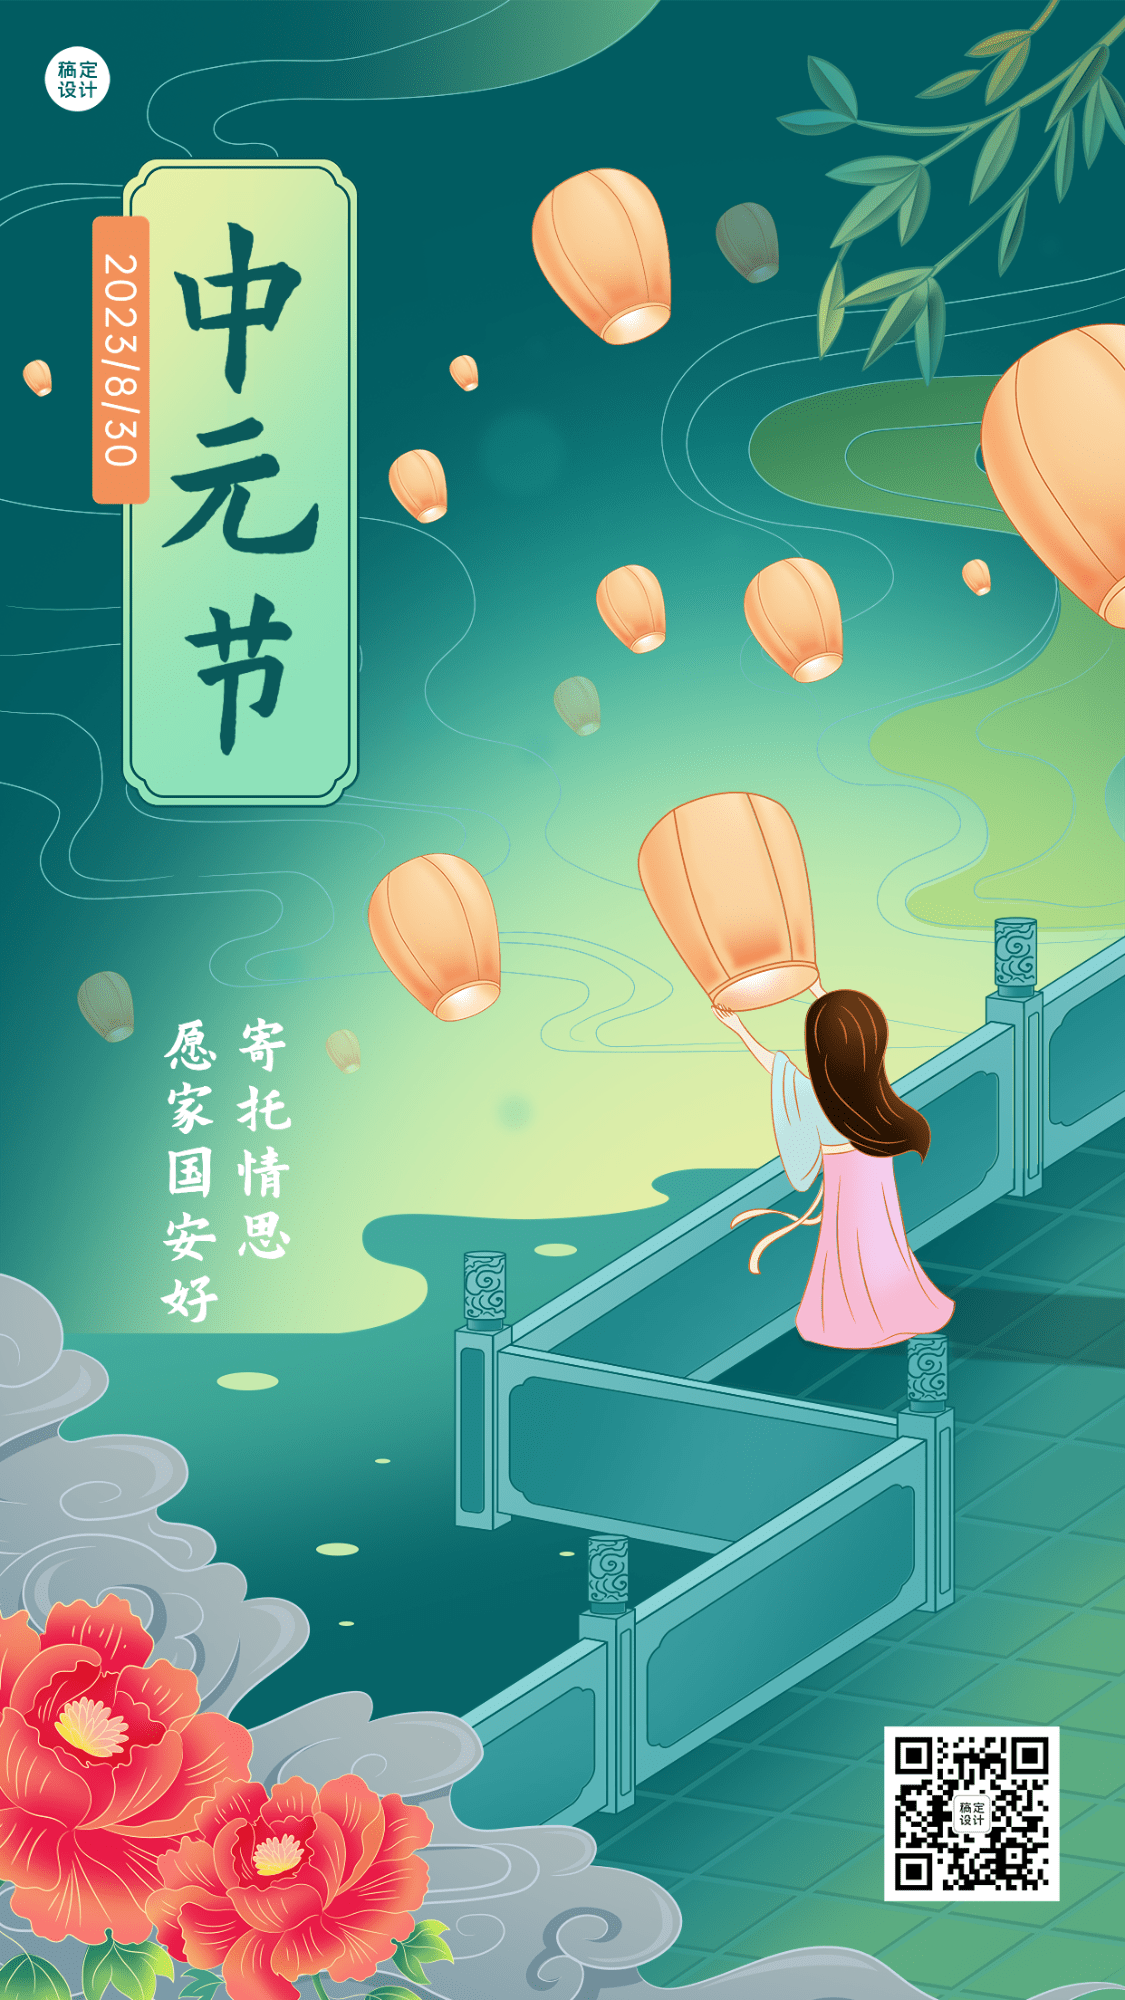 中元节节日祝福插画手机海报预览效果